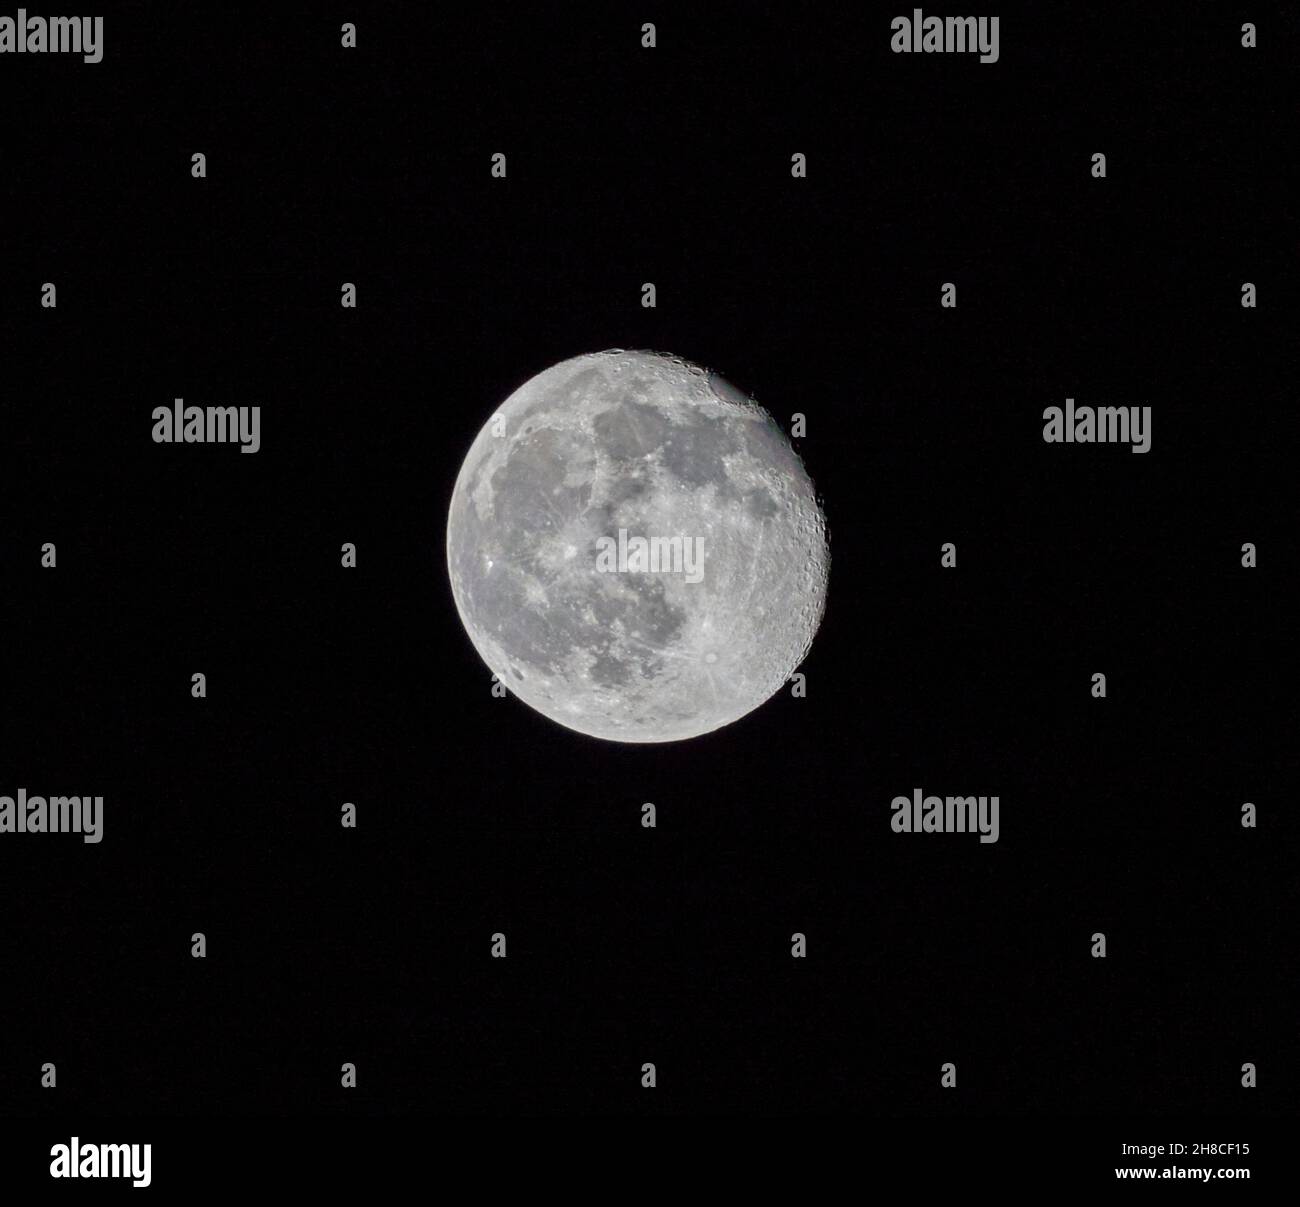 600mm colpo di luna gibbosa in declino 94.24% illuminato il 21/11/21 come visto da Park Terrace Lane Glasgow G3 6BQ alle 22:34 GMT Foto Stock